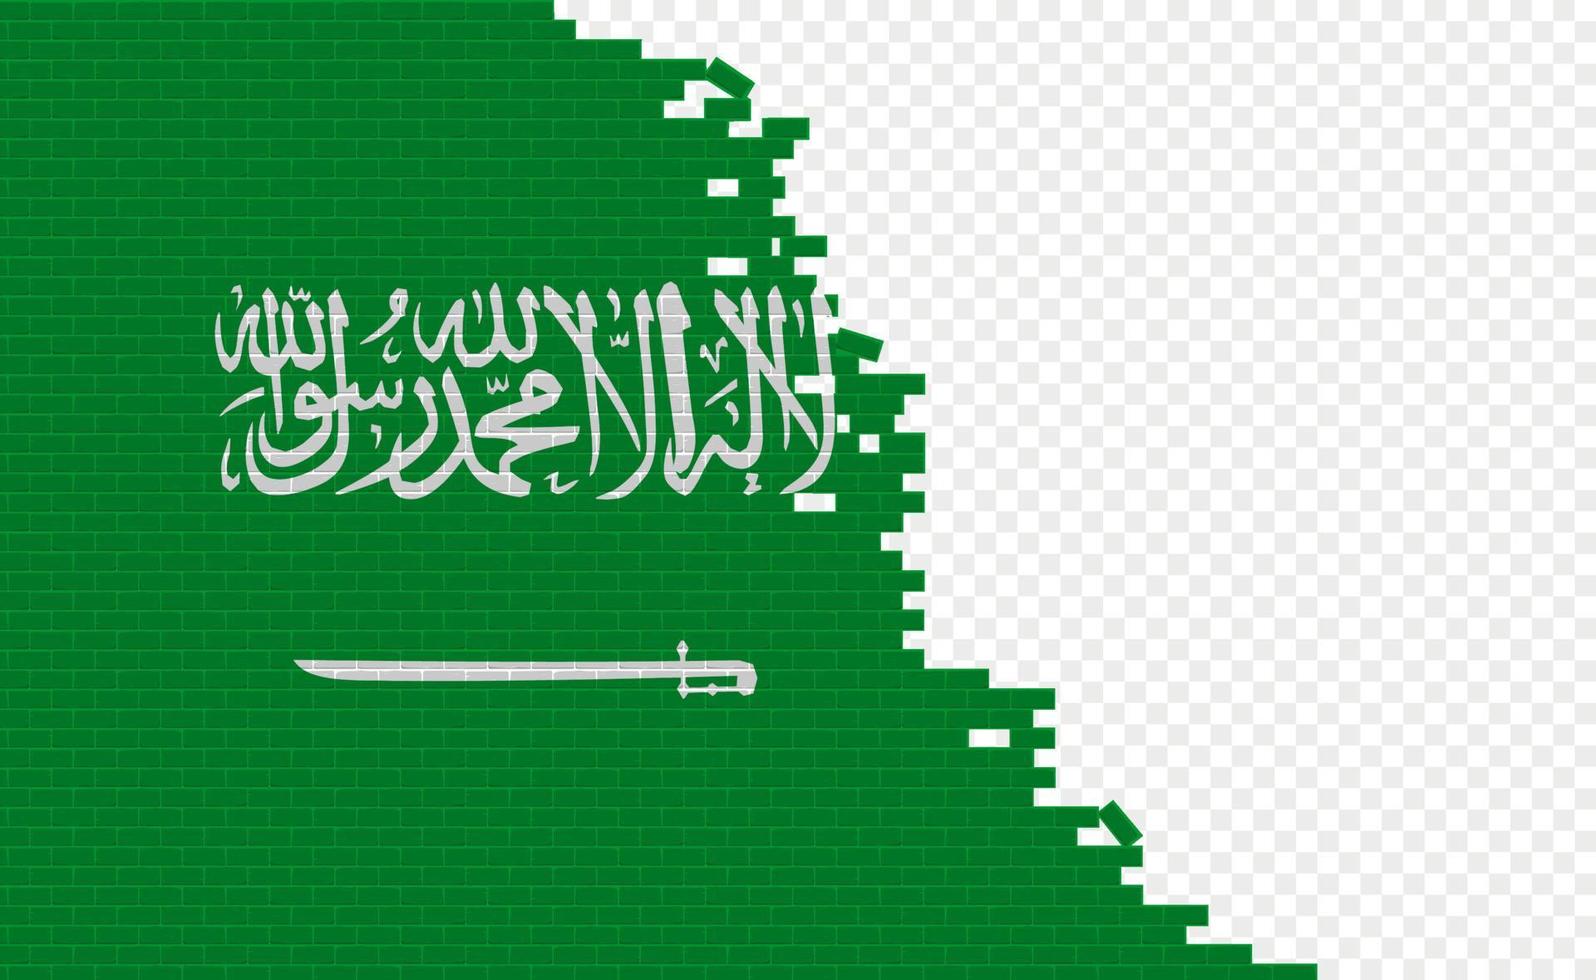 drapeau de l'arabie saoudite sur le mur de briques cassées. champ de drapeau vide d'un autre pays. comparaison de pays. édition facile et vecteur en groupes.